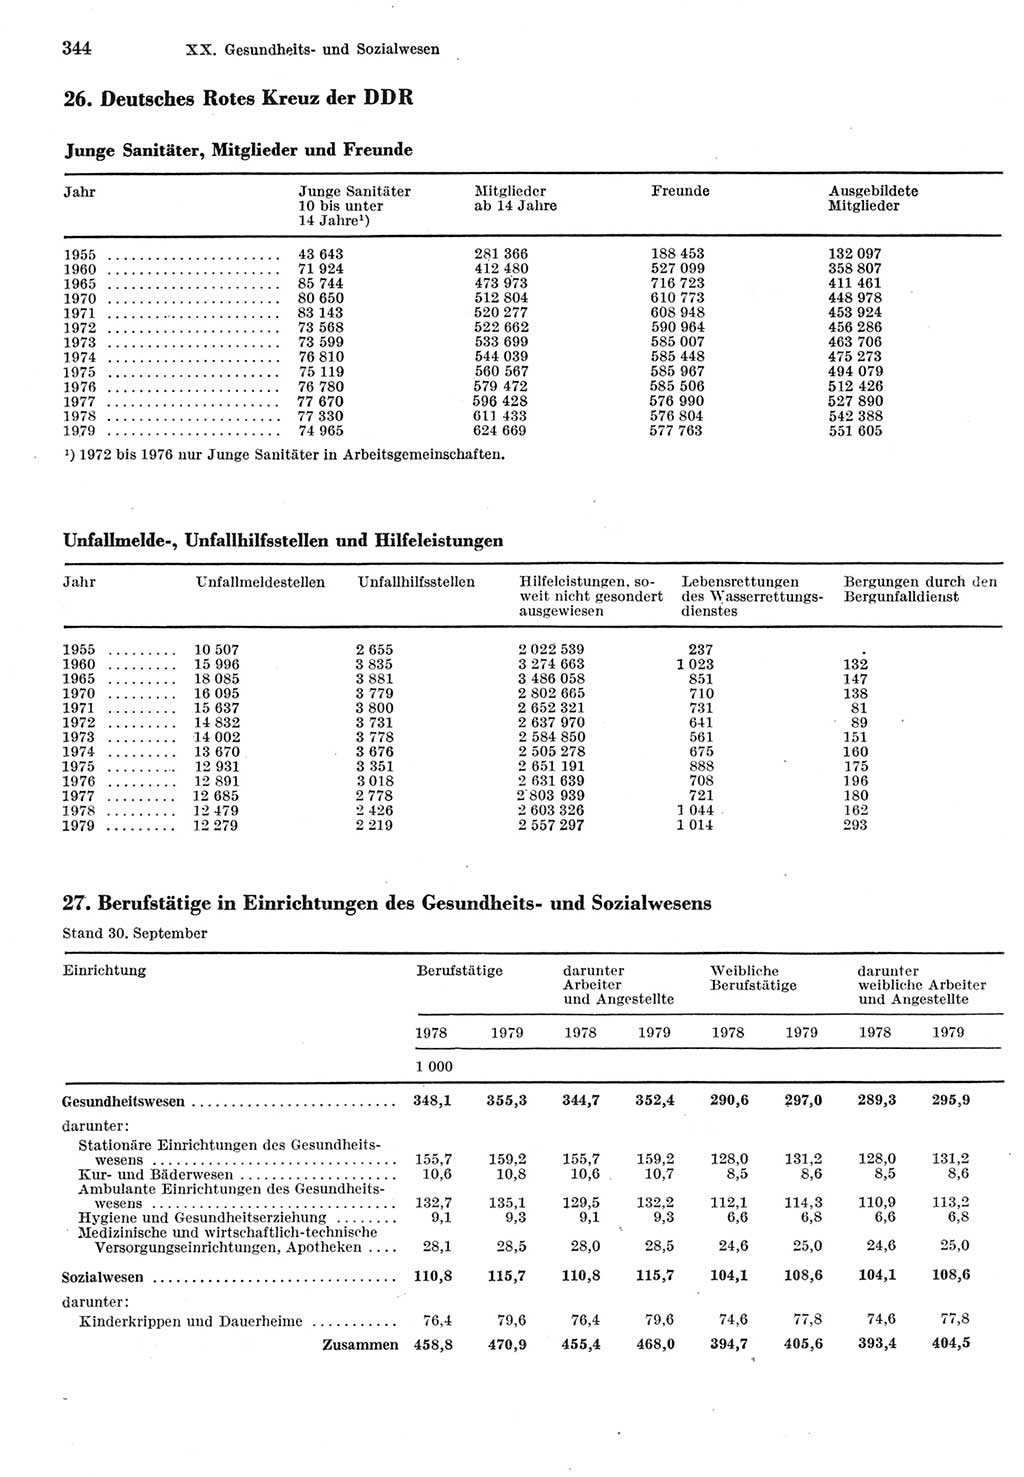 Statistisches Jahrbuch der Deutschen Demokratischen Republik (DDR) 1980, Seite 344 (Stat. Jb. DDR 1980, S. 344)